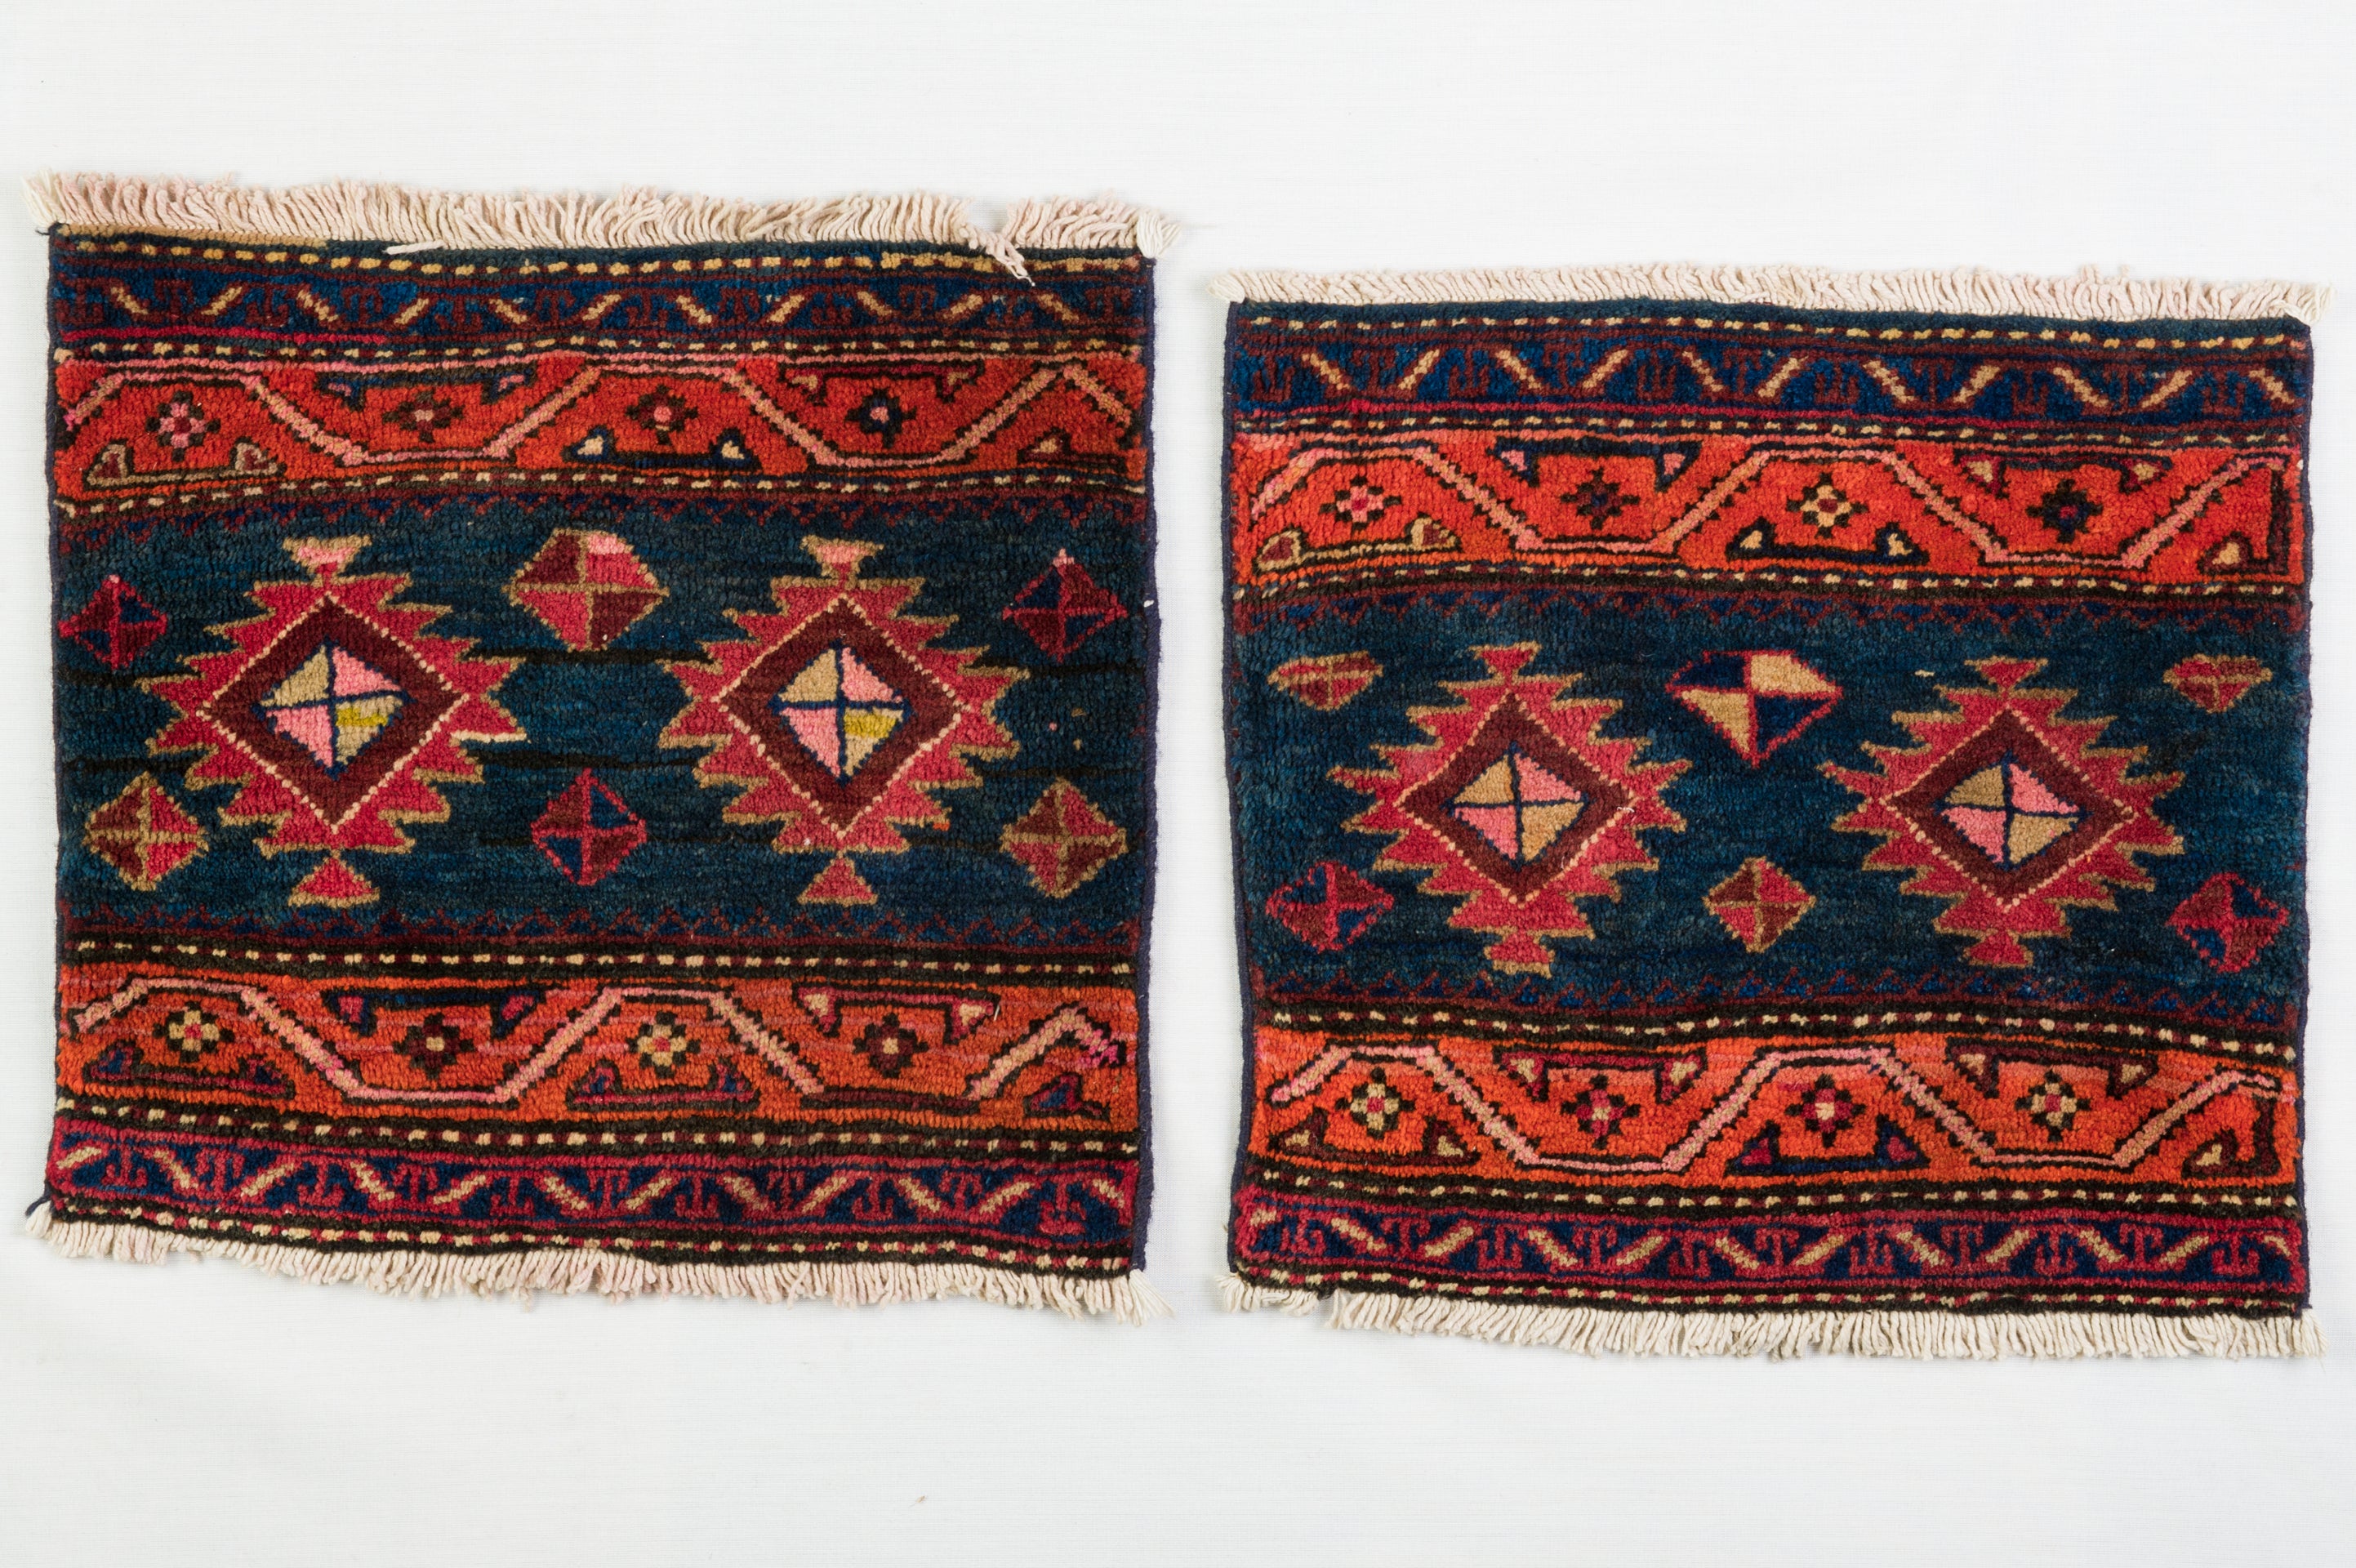 Seltenes kleines Paar Kurdistan-Teppiche, das aus einer alten Satteltasche geborgen wurde: der mittlere Teil ist im Laufe der Zeit abgenutzt.
Sie können auf zwei Liegestühle oder mit zwei kleinen Tischen oder machen Kissen verwenden.  Diese kleinen